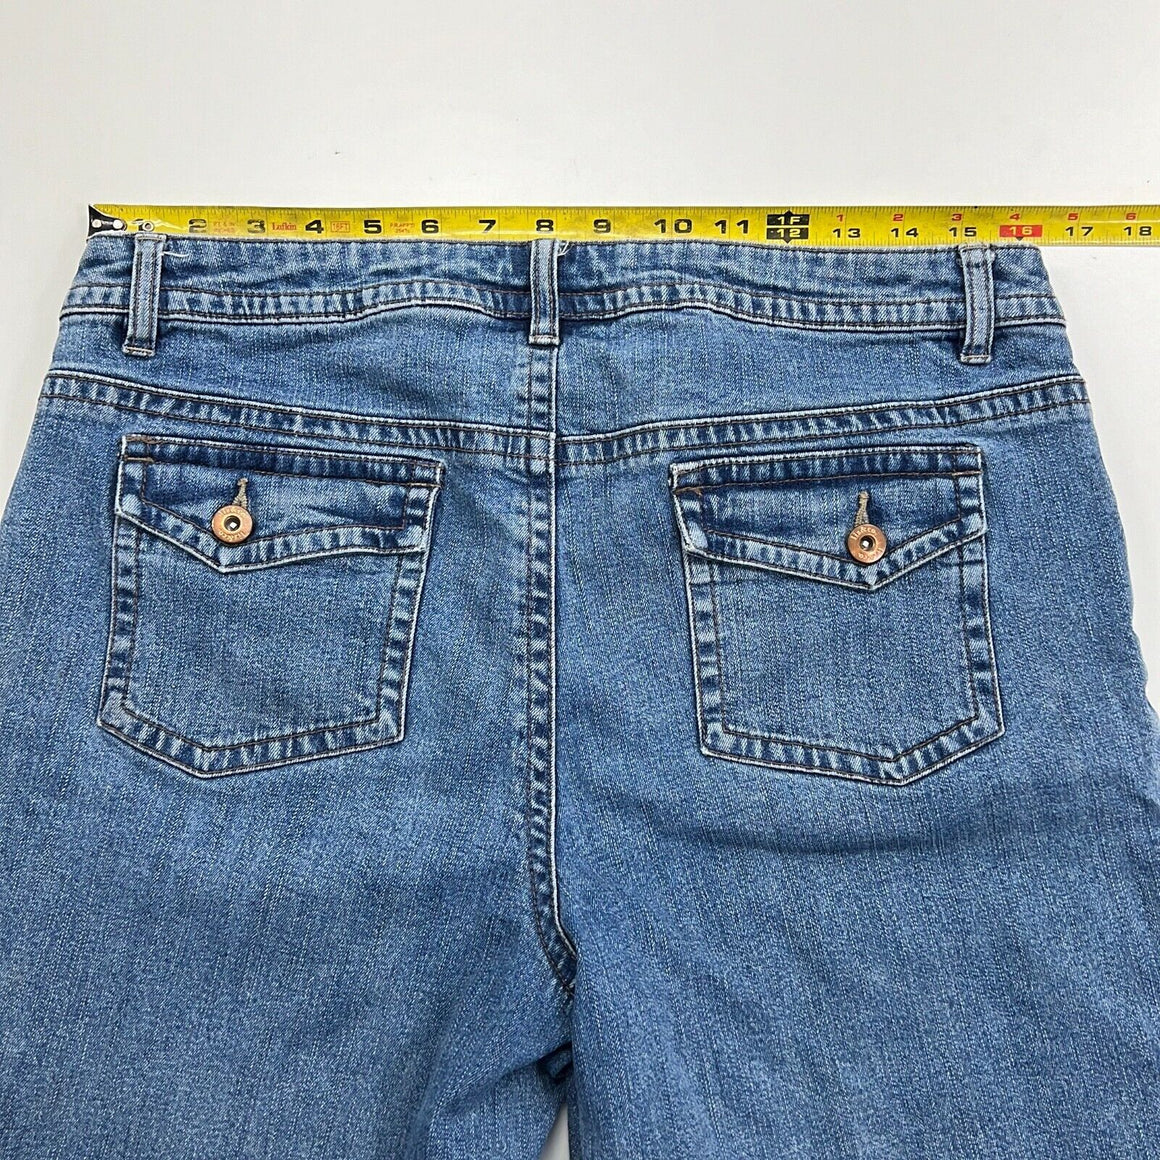 Liz & Co Jeans Capris Woman's Size 10 Medium Blue Wash Denim Jean